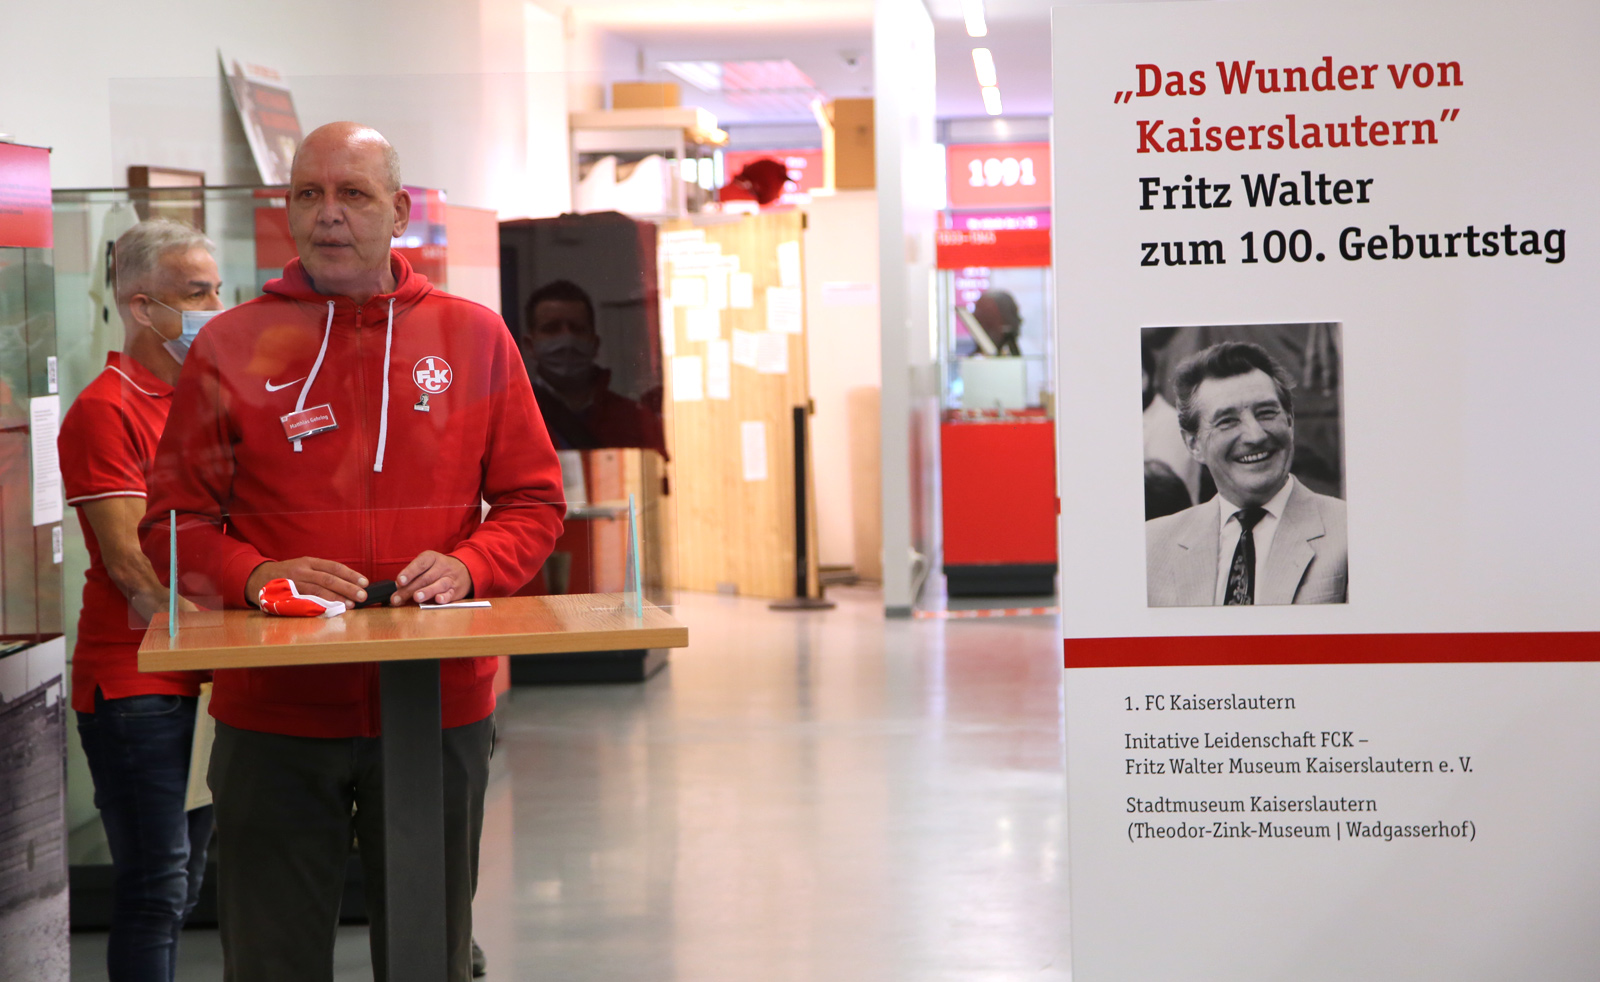 Fritz Walter Das Wunder Von Kaiserslautern Und Das Wochenende Um Seinen 100 Geburtstag Fck De